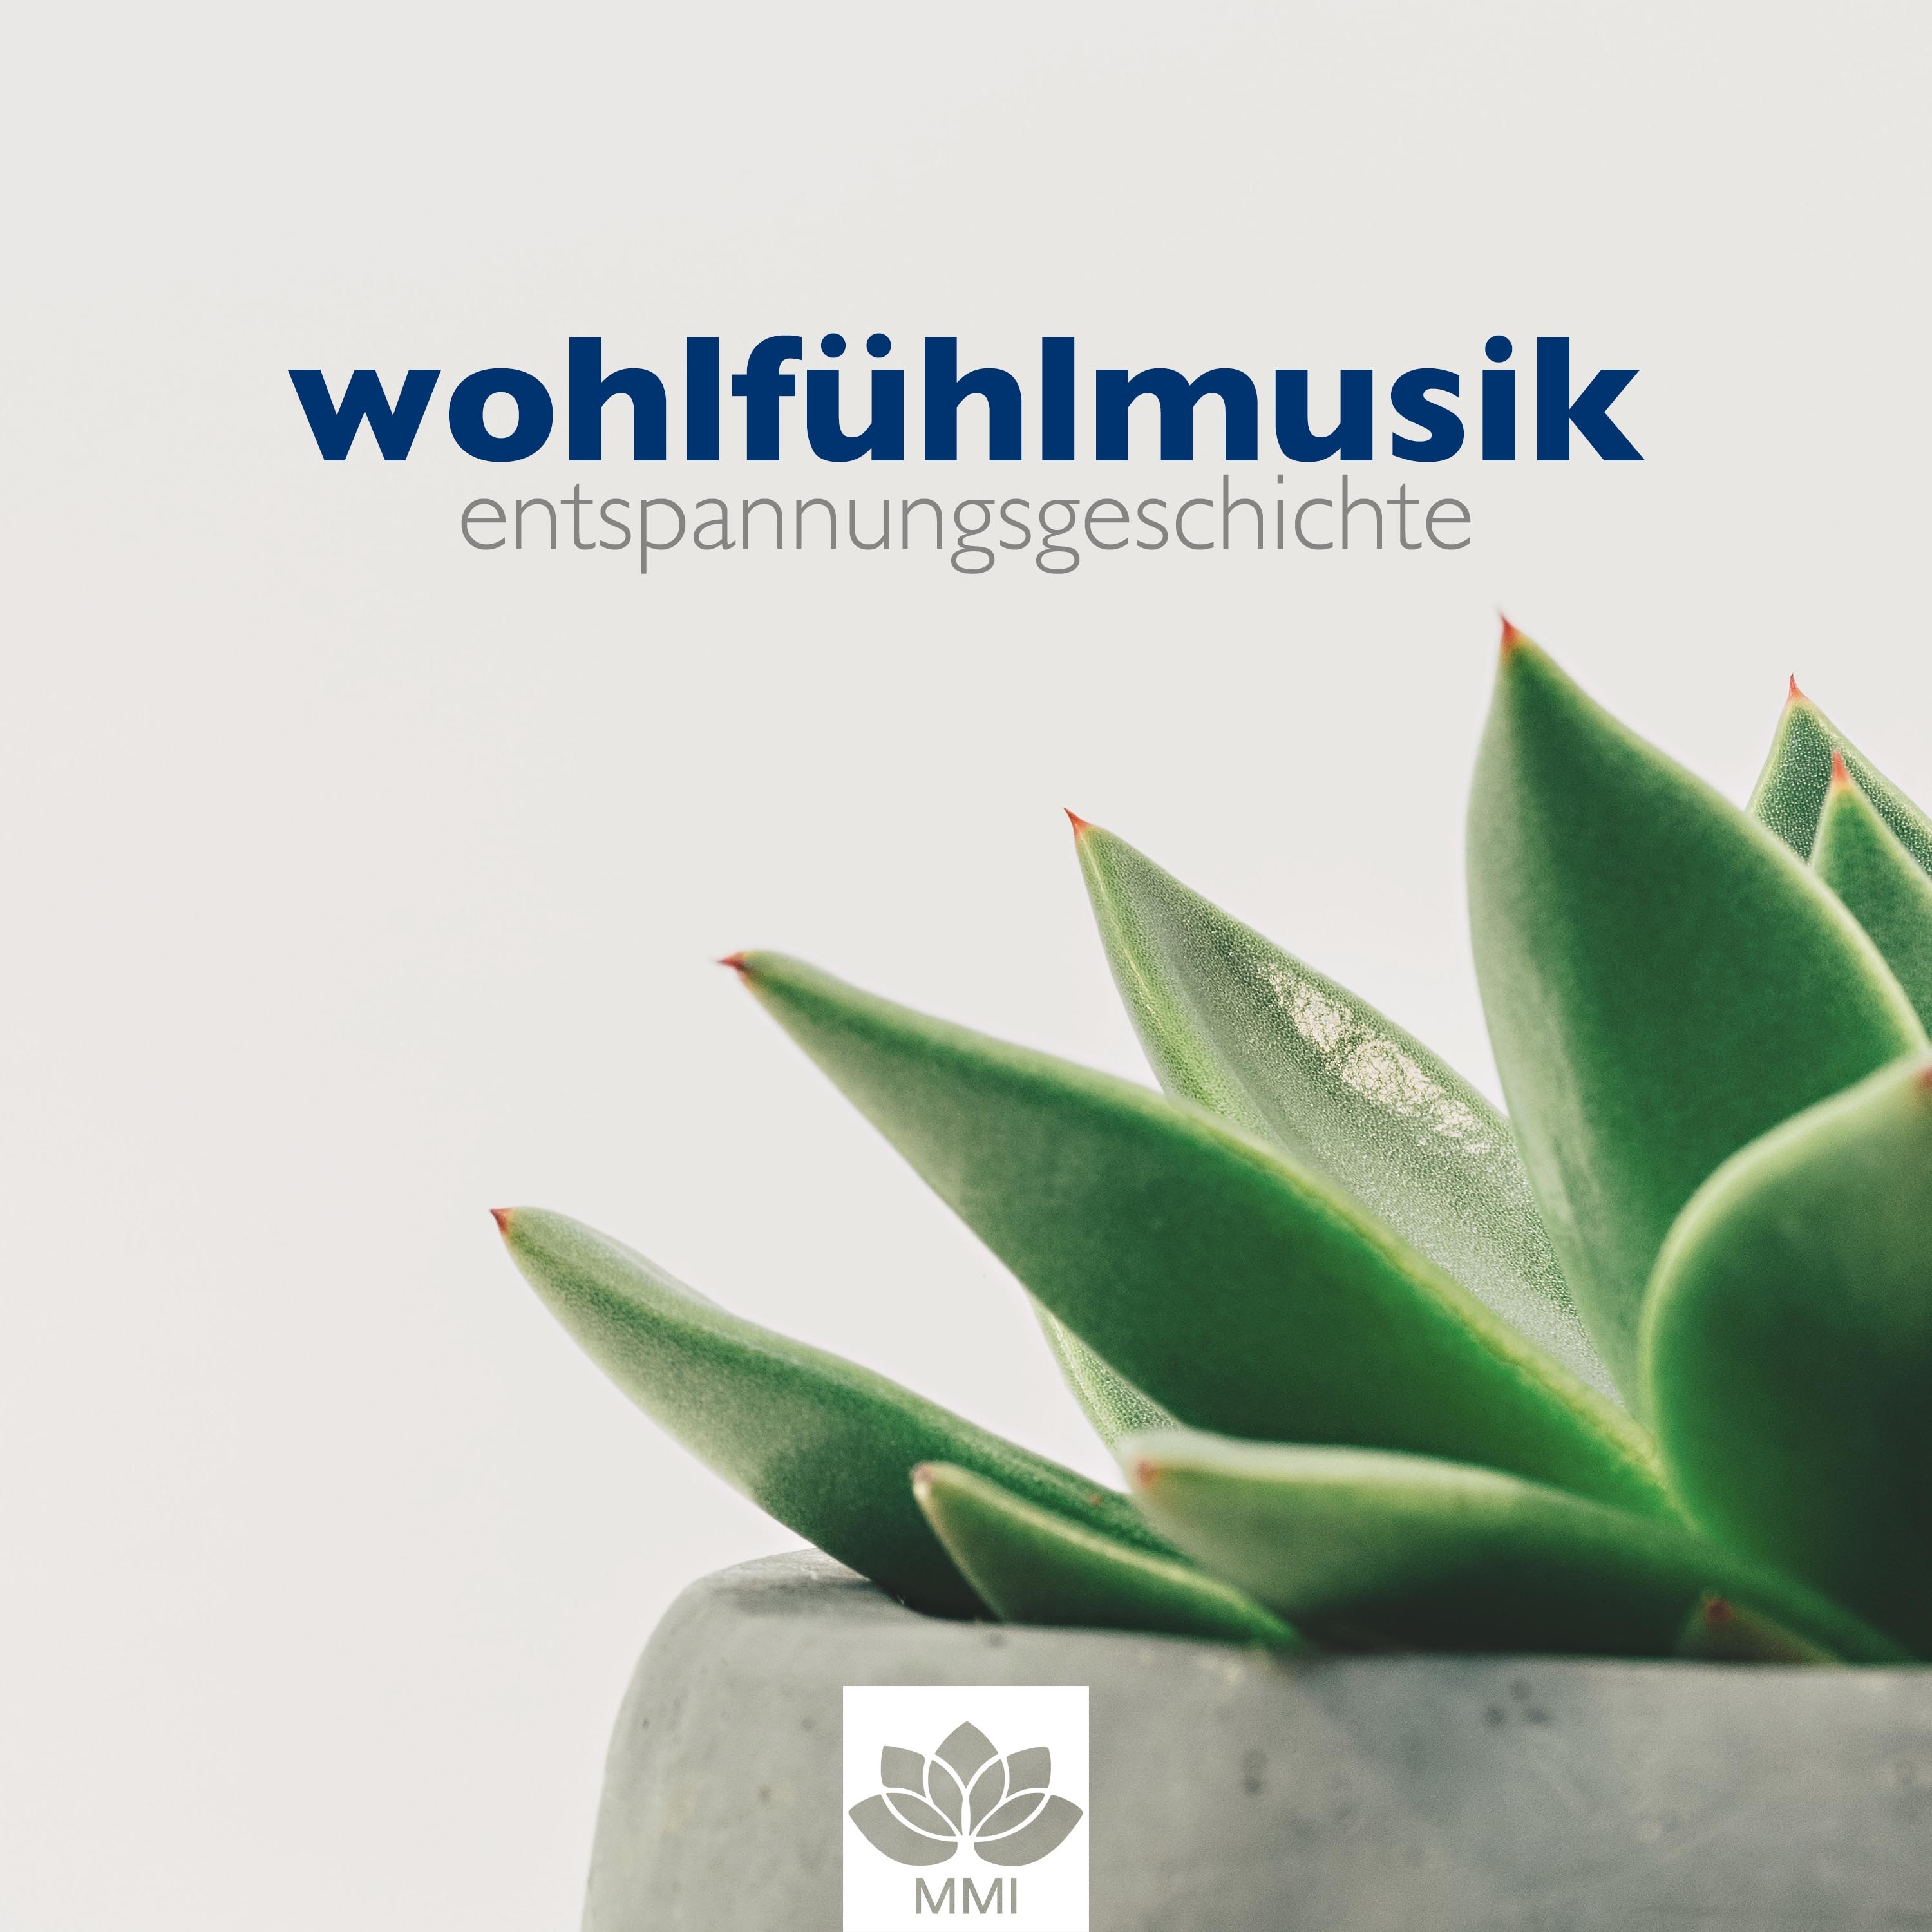 Wohlfü hlmusik: Entspannungsgeschichte, Entspannungsmusik Gitarre, Klavier, Natur